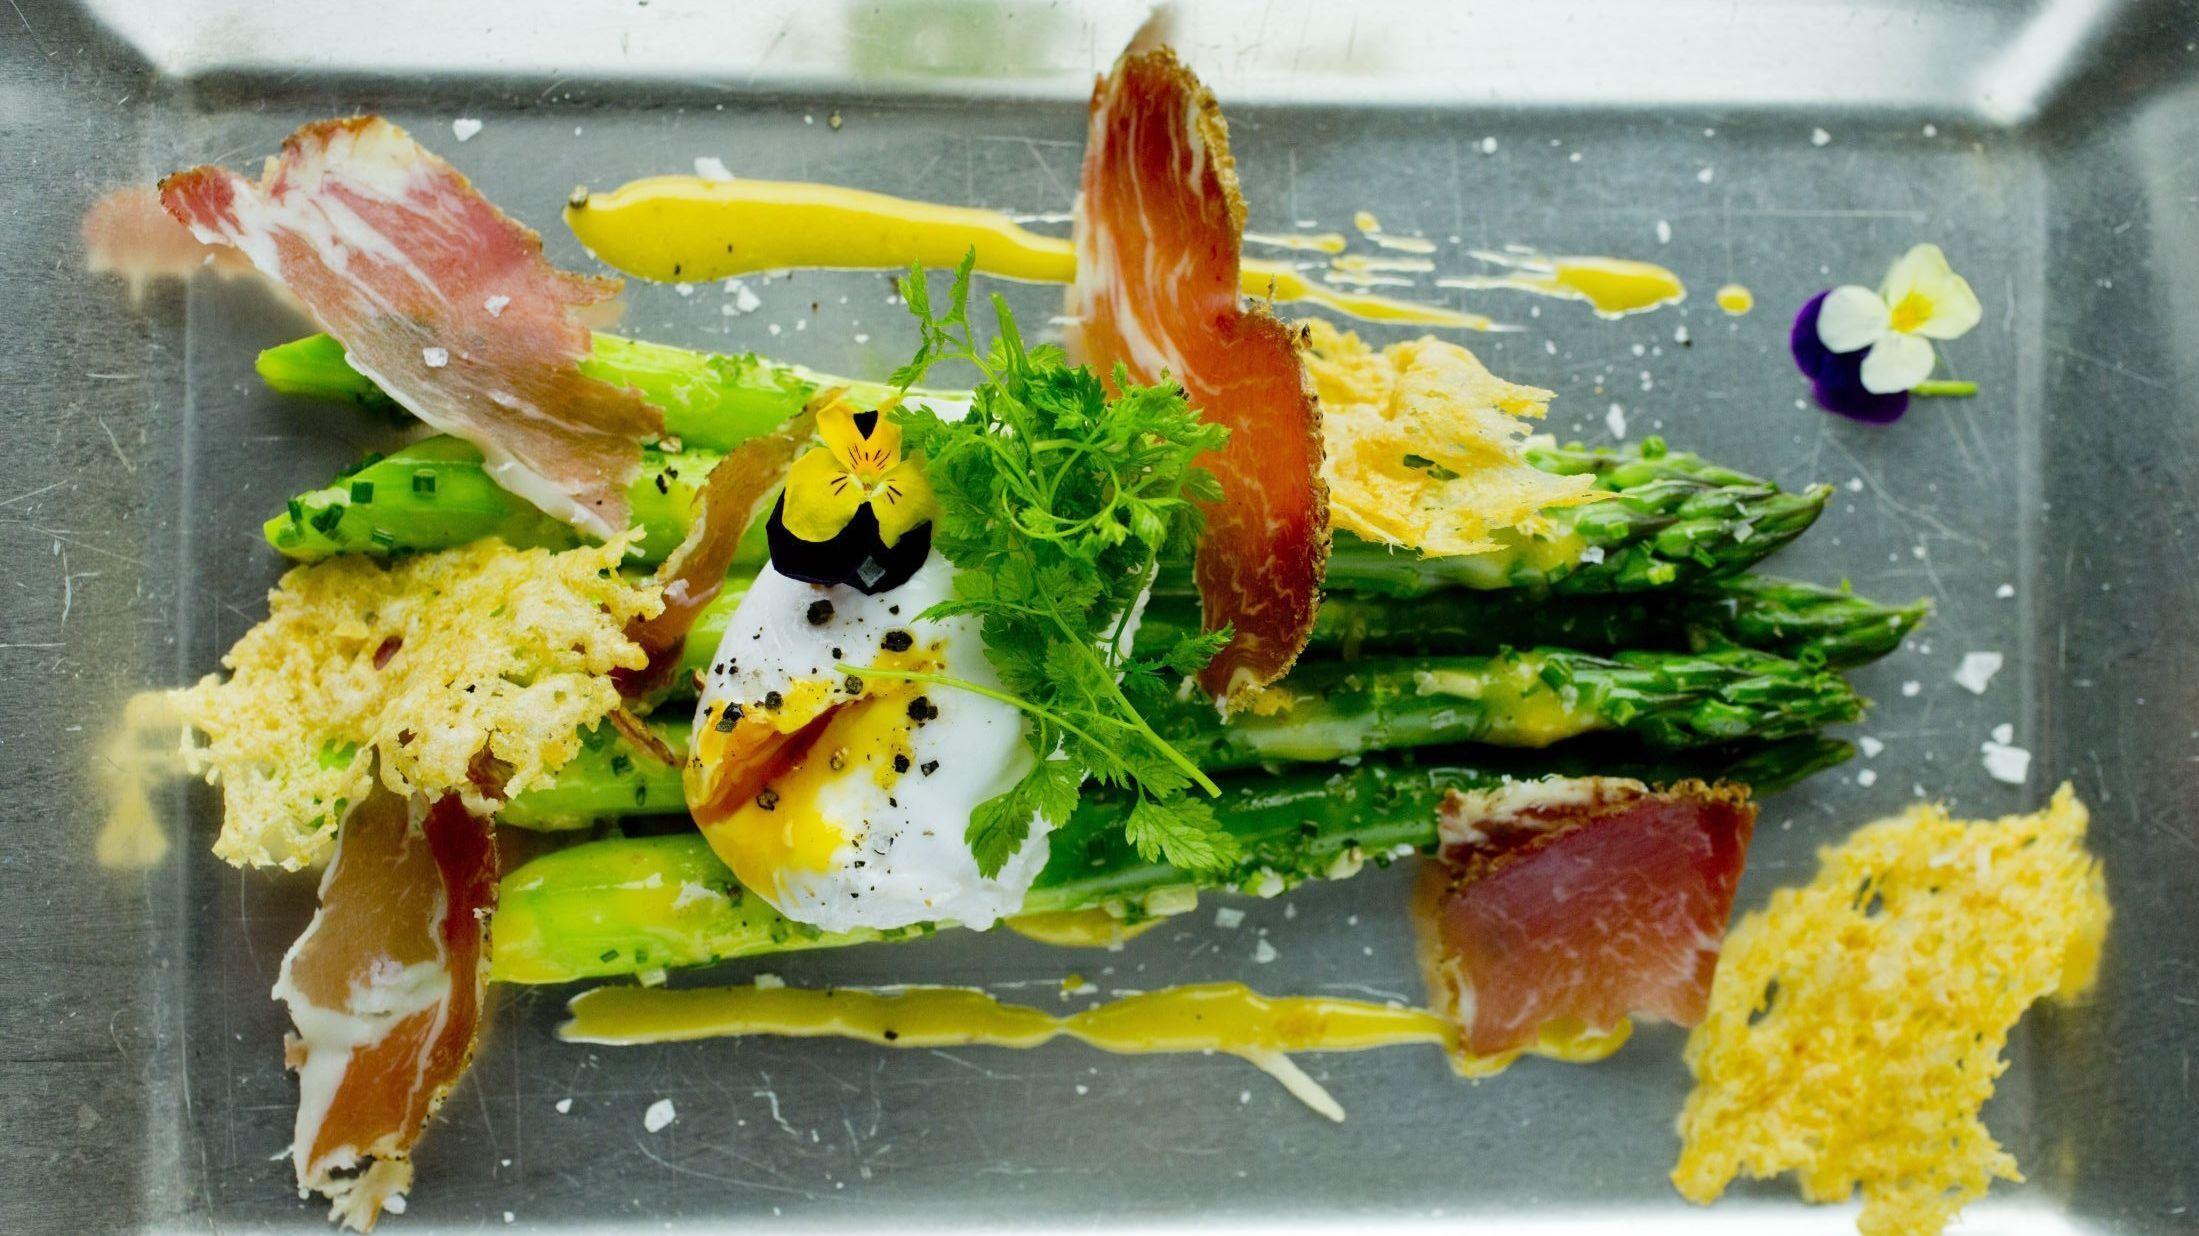 FJONGT: Vårens beste råvare asparges blir ekstra lekker med posjert egg, noen skiver spekeskinke og sprø ost til. Foto: Sara Johannessen/VG